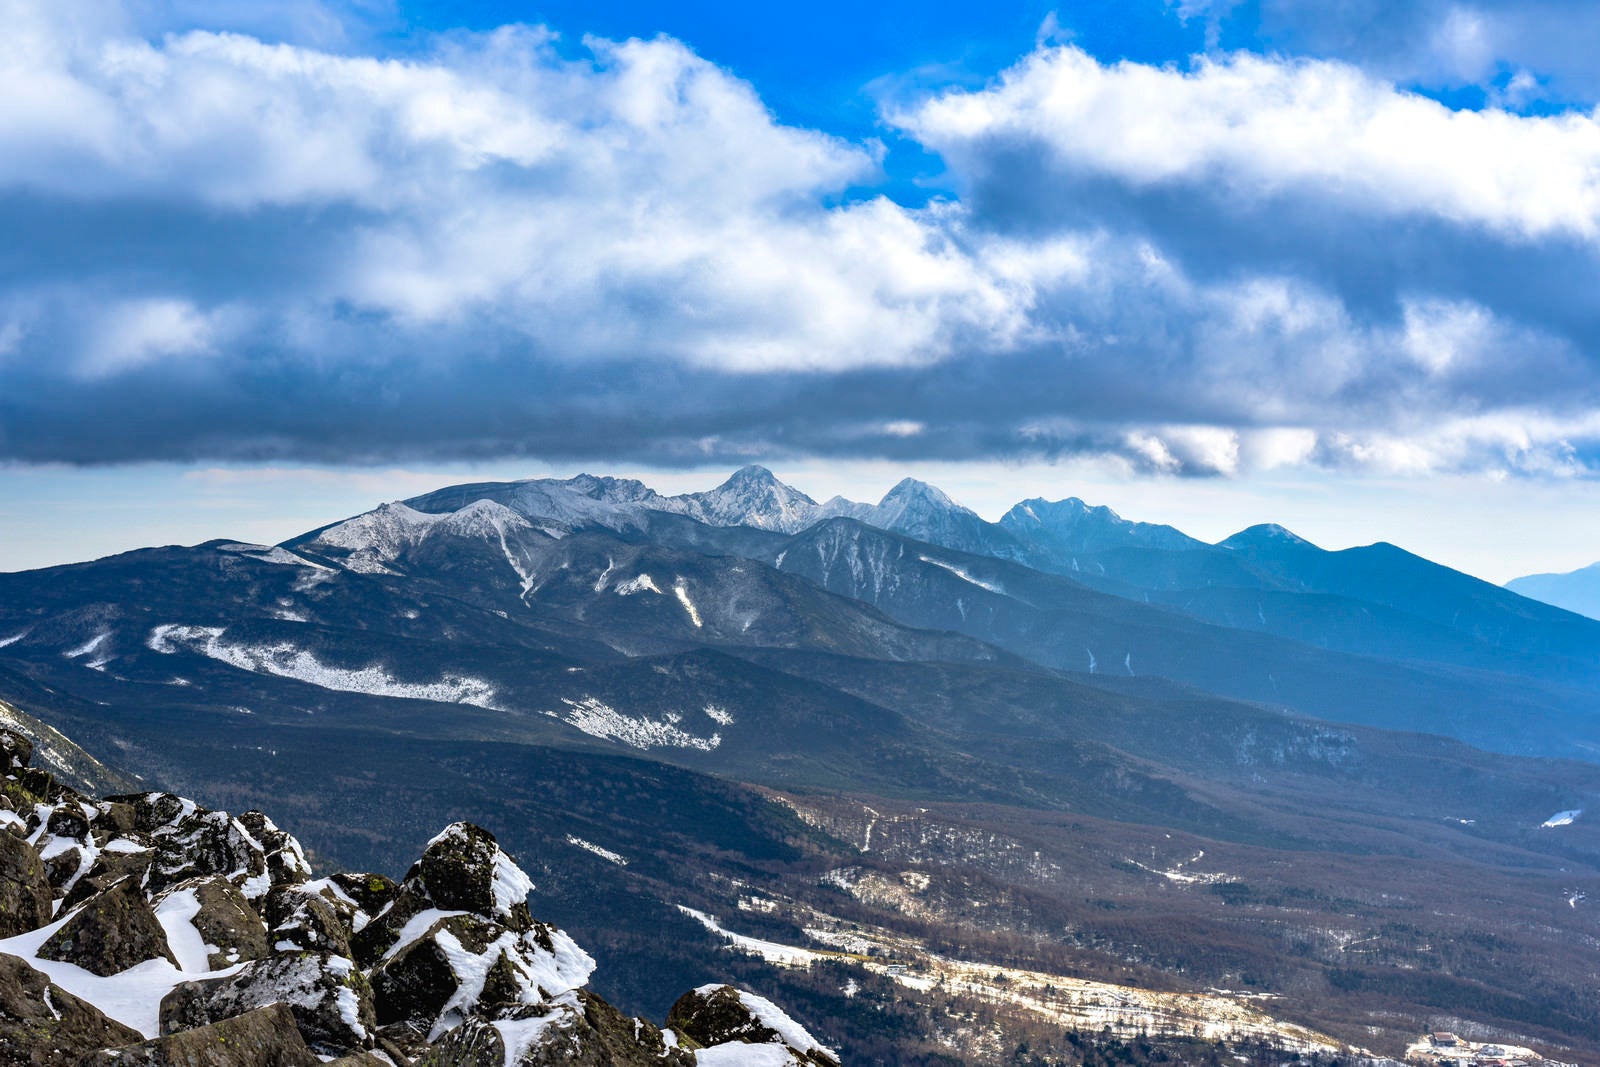 「蓼科山から見る八ヶ岳赤岳方面の景色」の写真